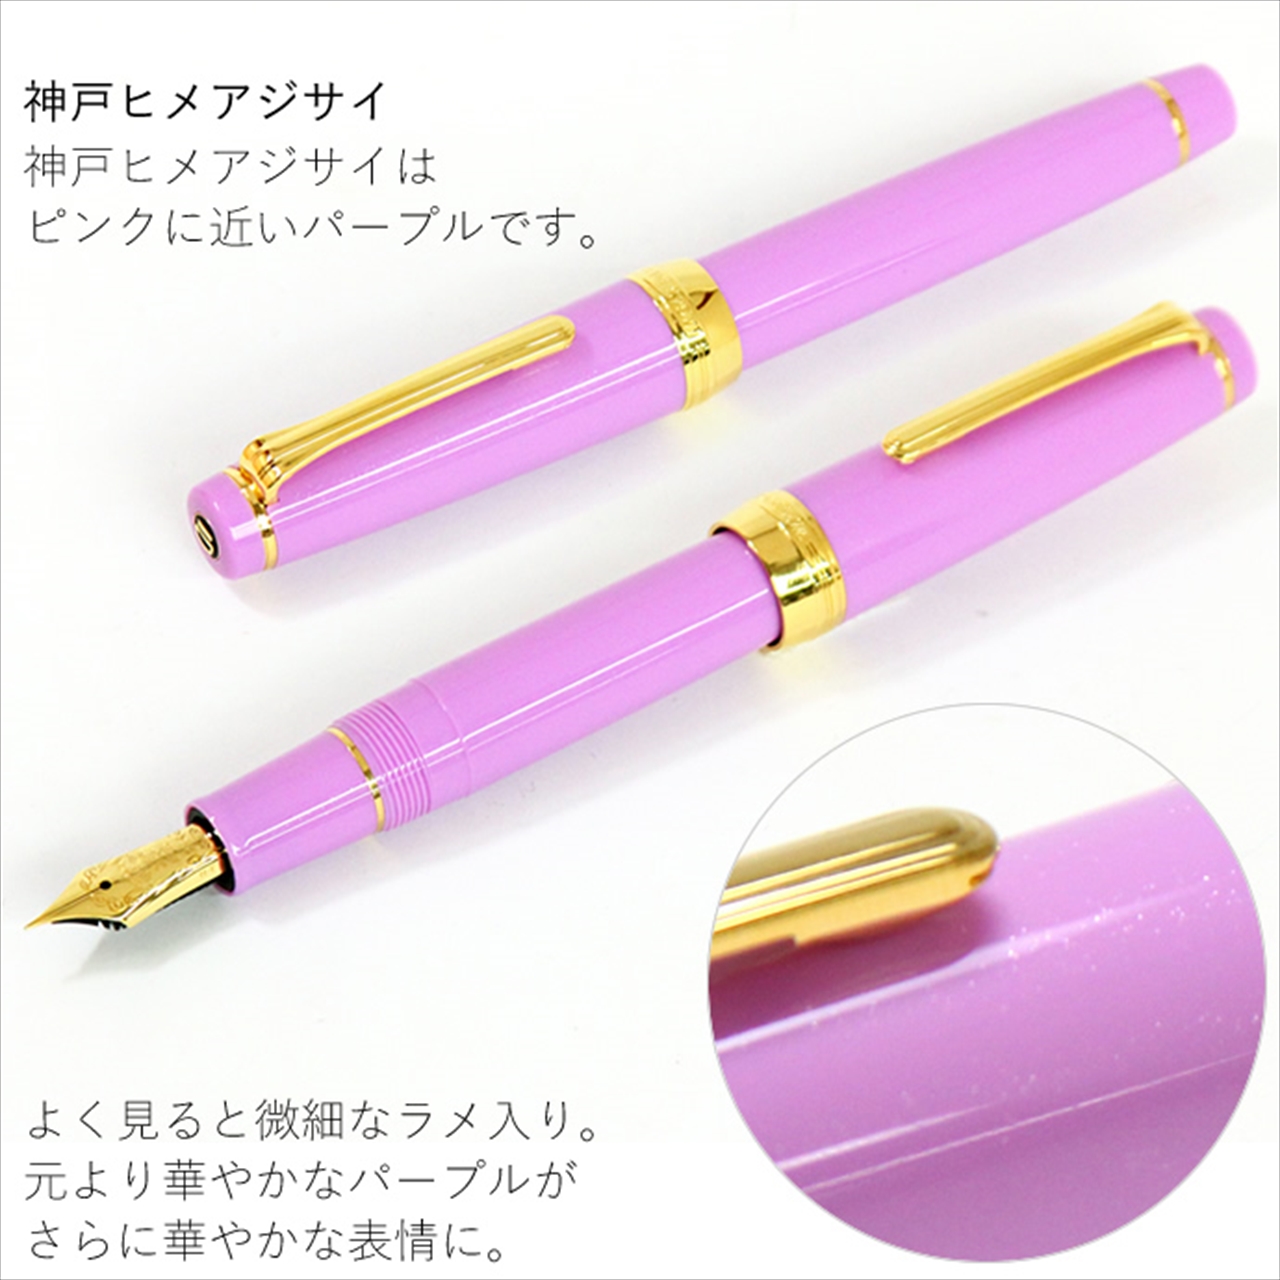 まだ購入できる！過去発売の NAGASAWAオリジナル万年筆 “限定モデル 